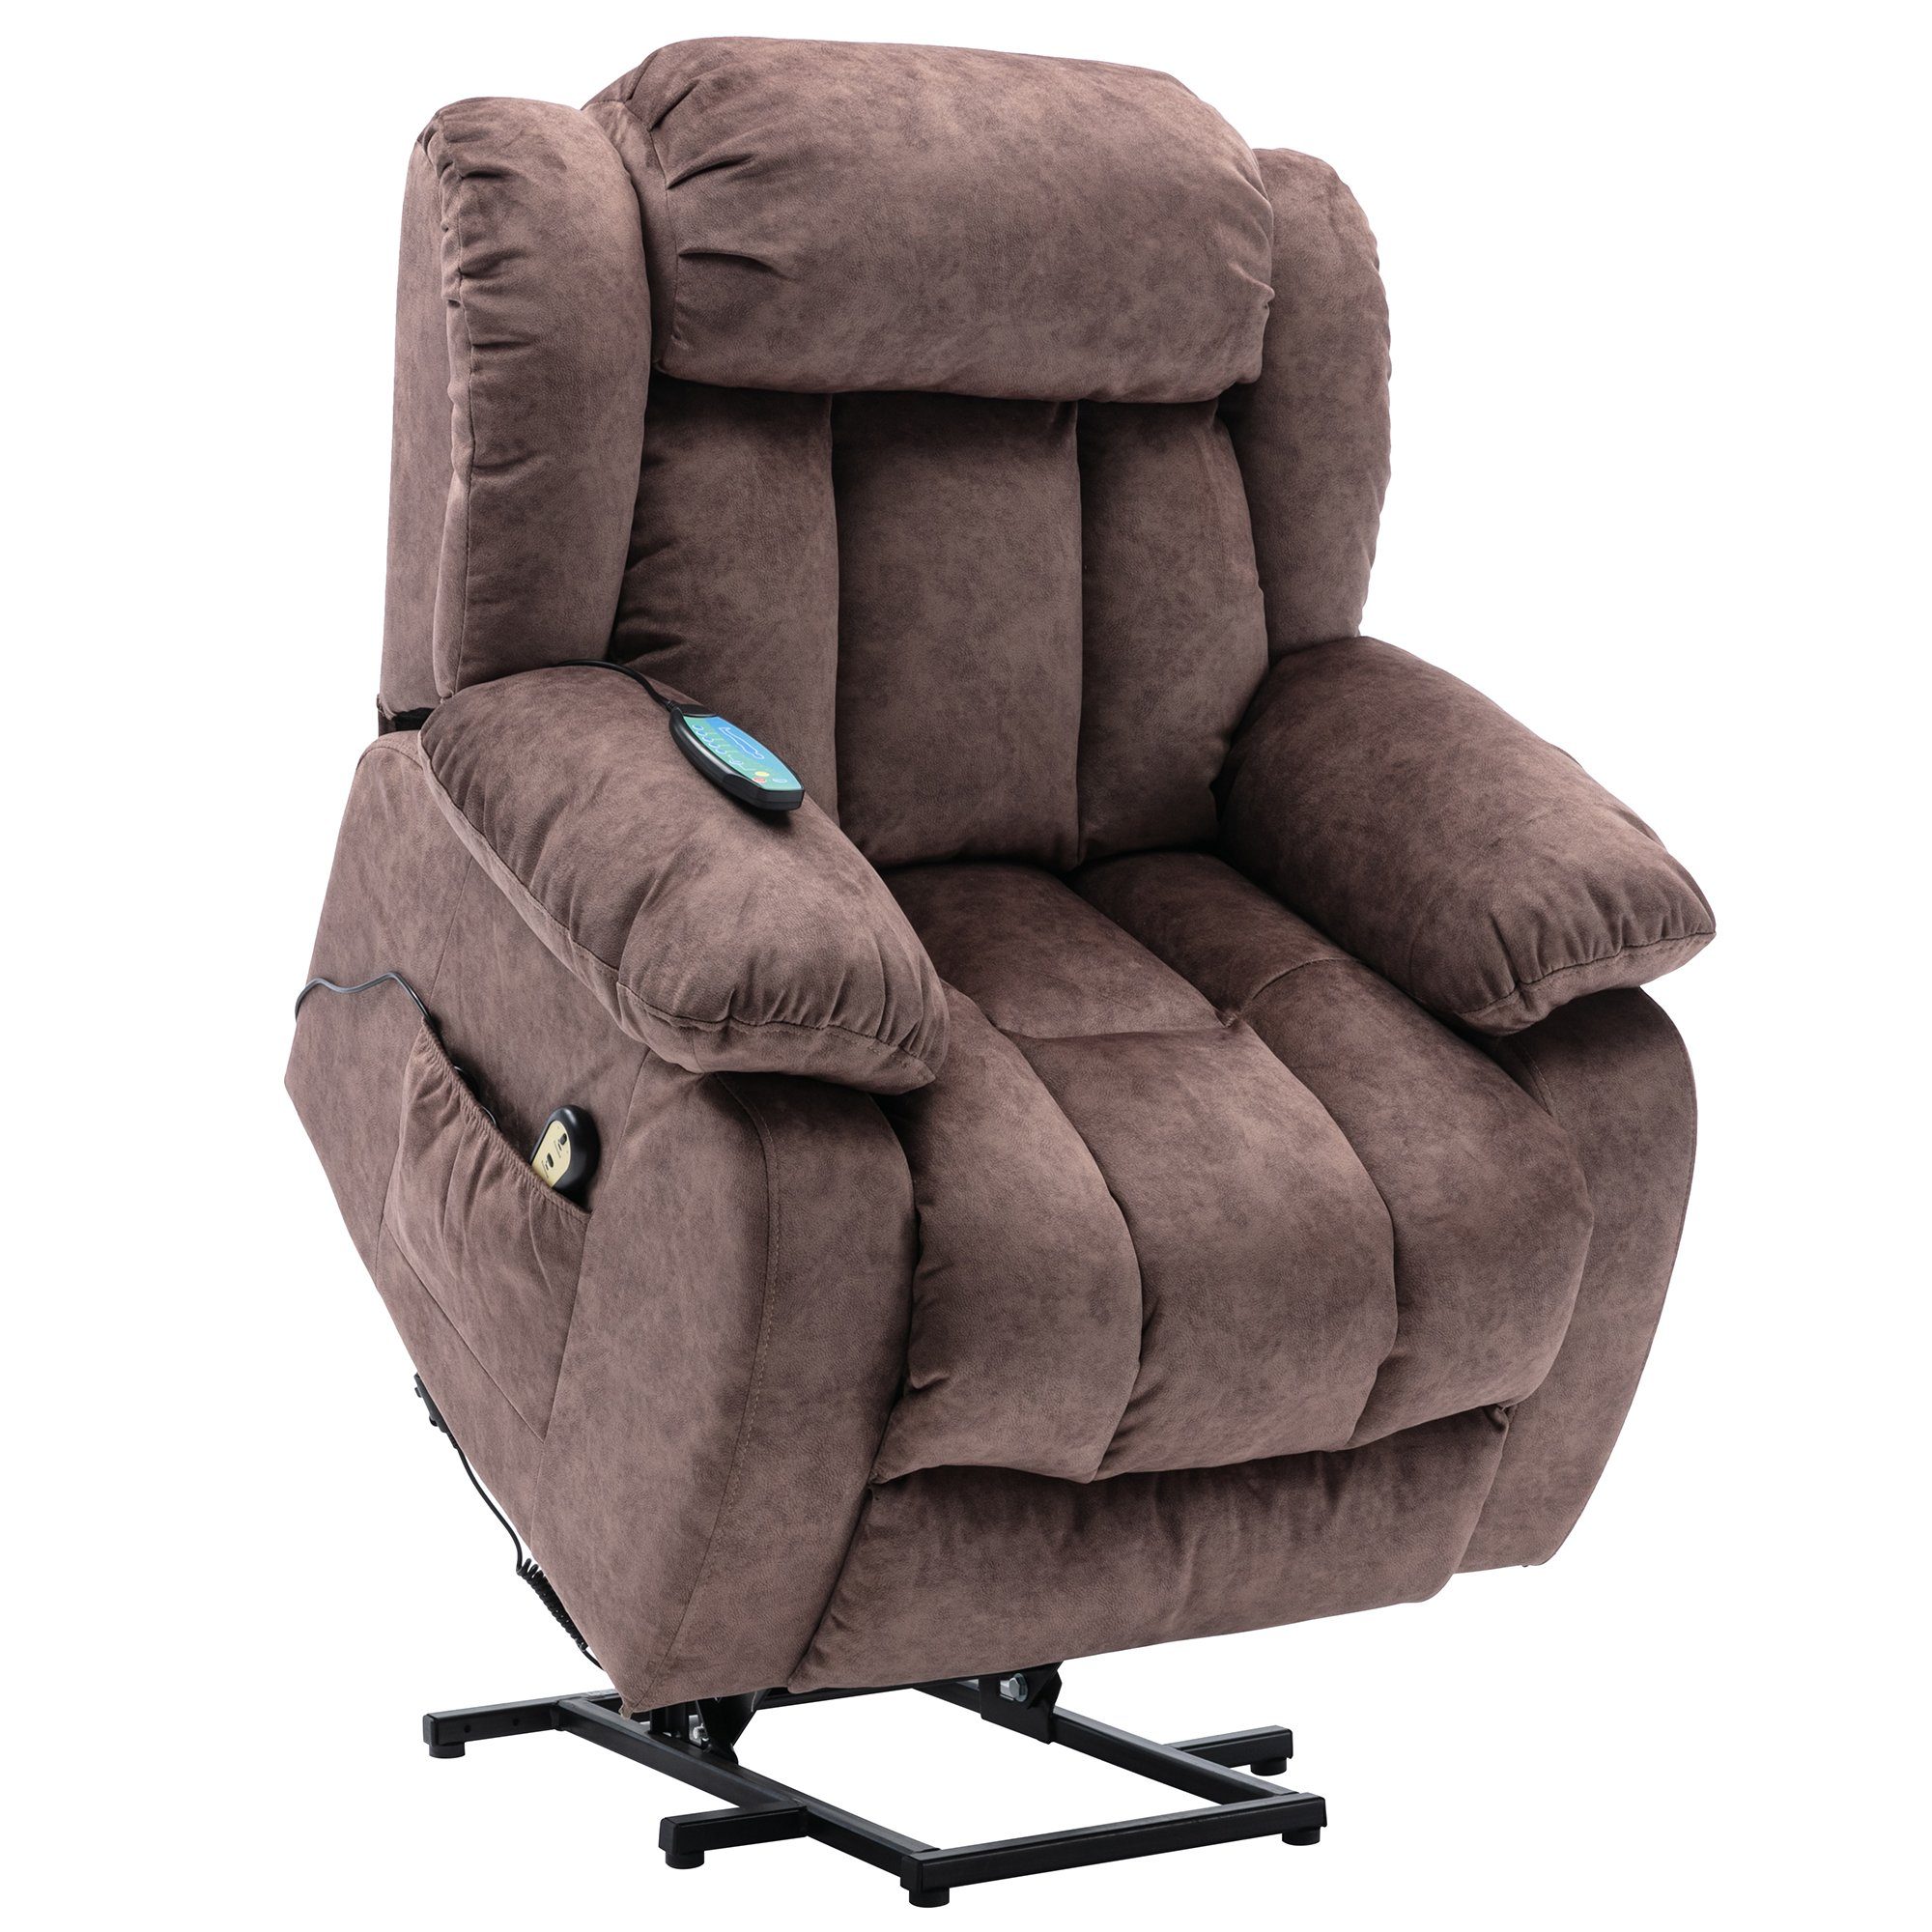 Merax TV-Sessel, Massagesesel mit Wärme und Vibration, USB-verstellbar, beheizt Braun